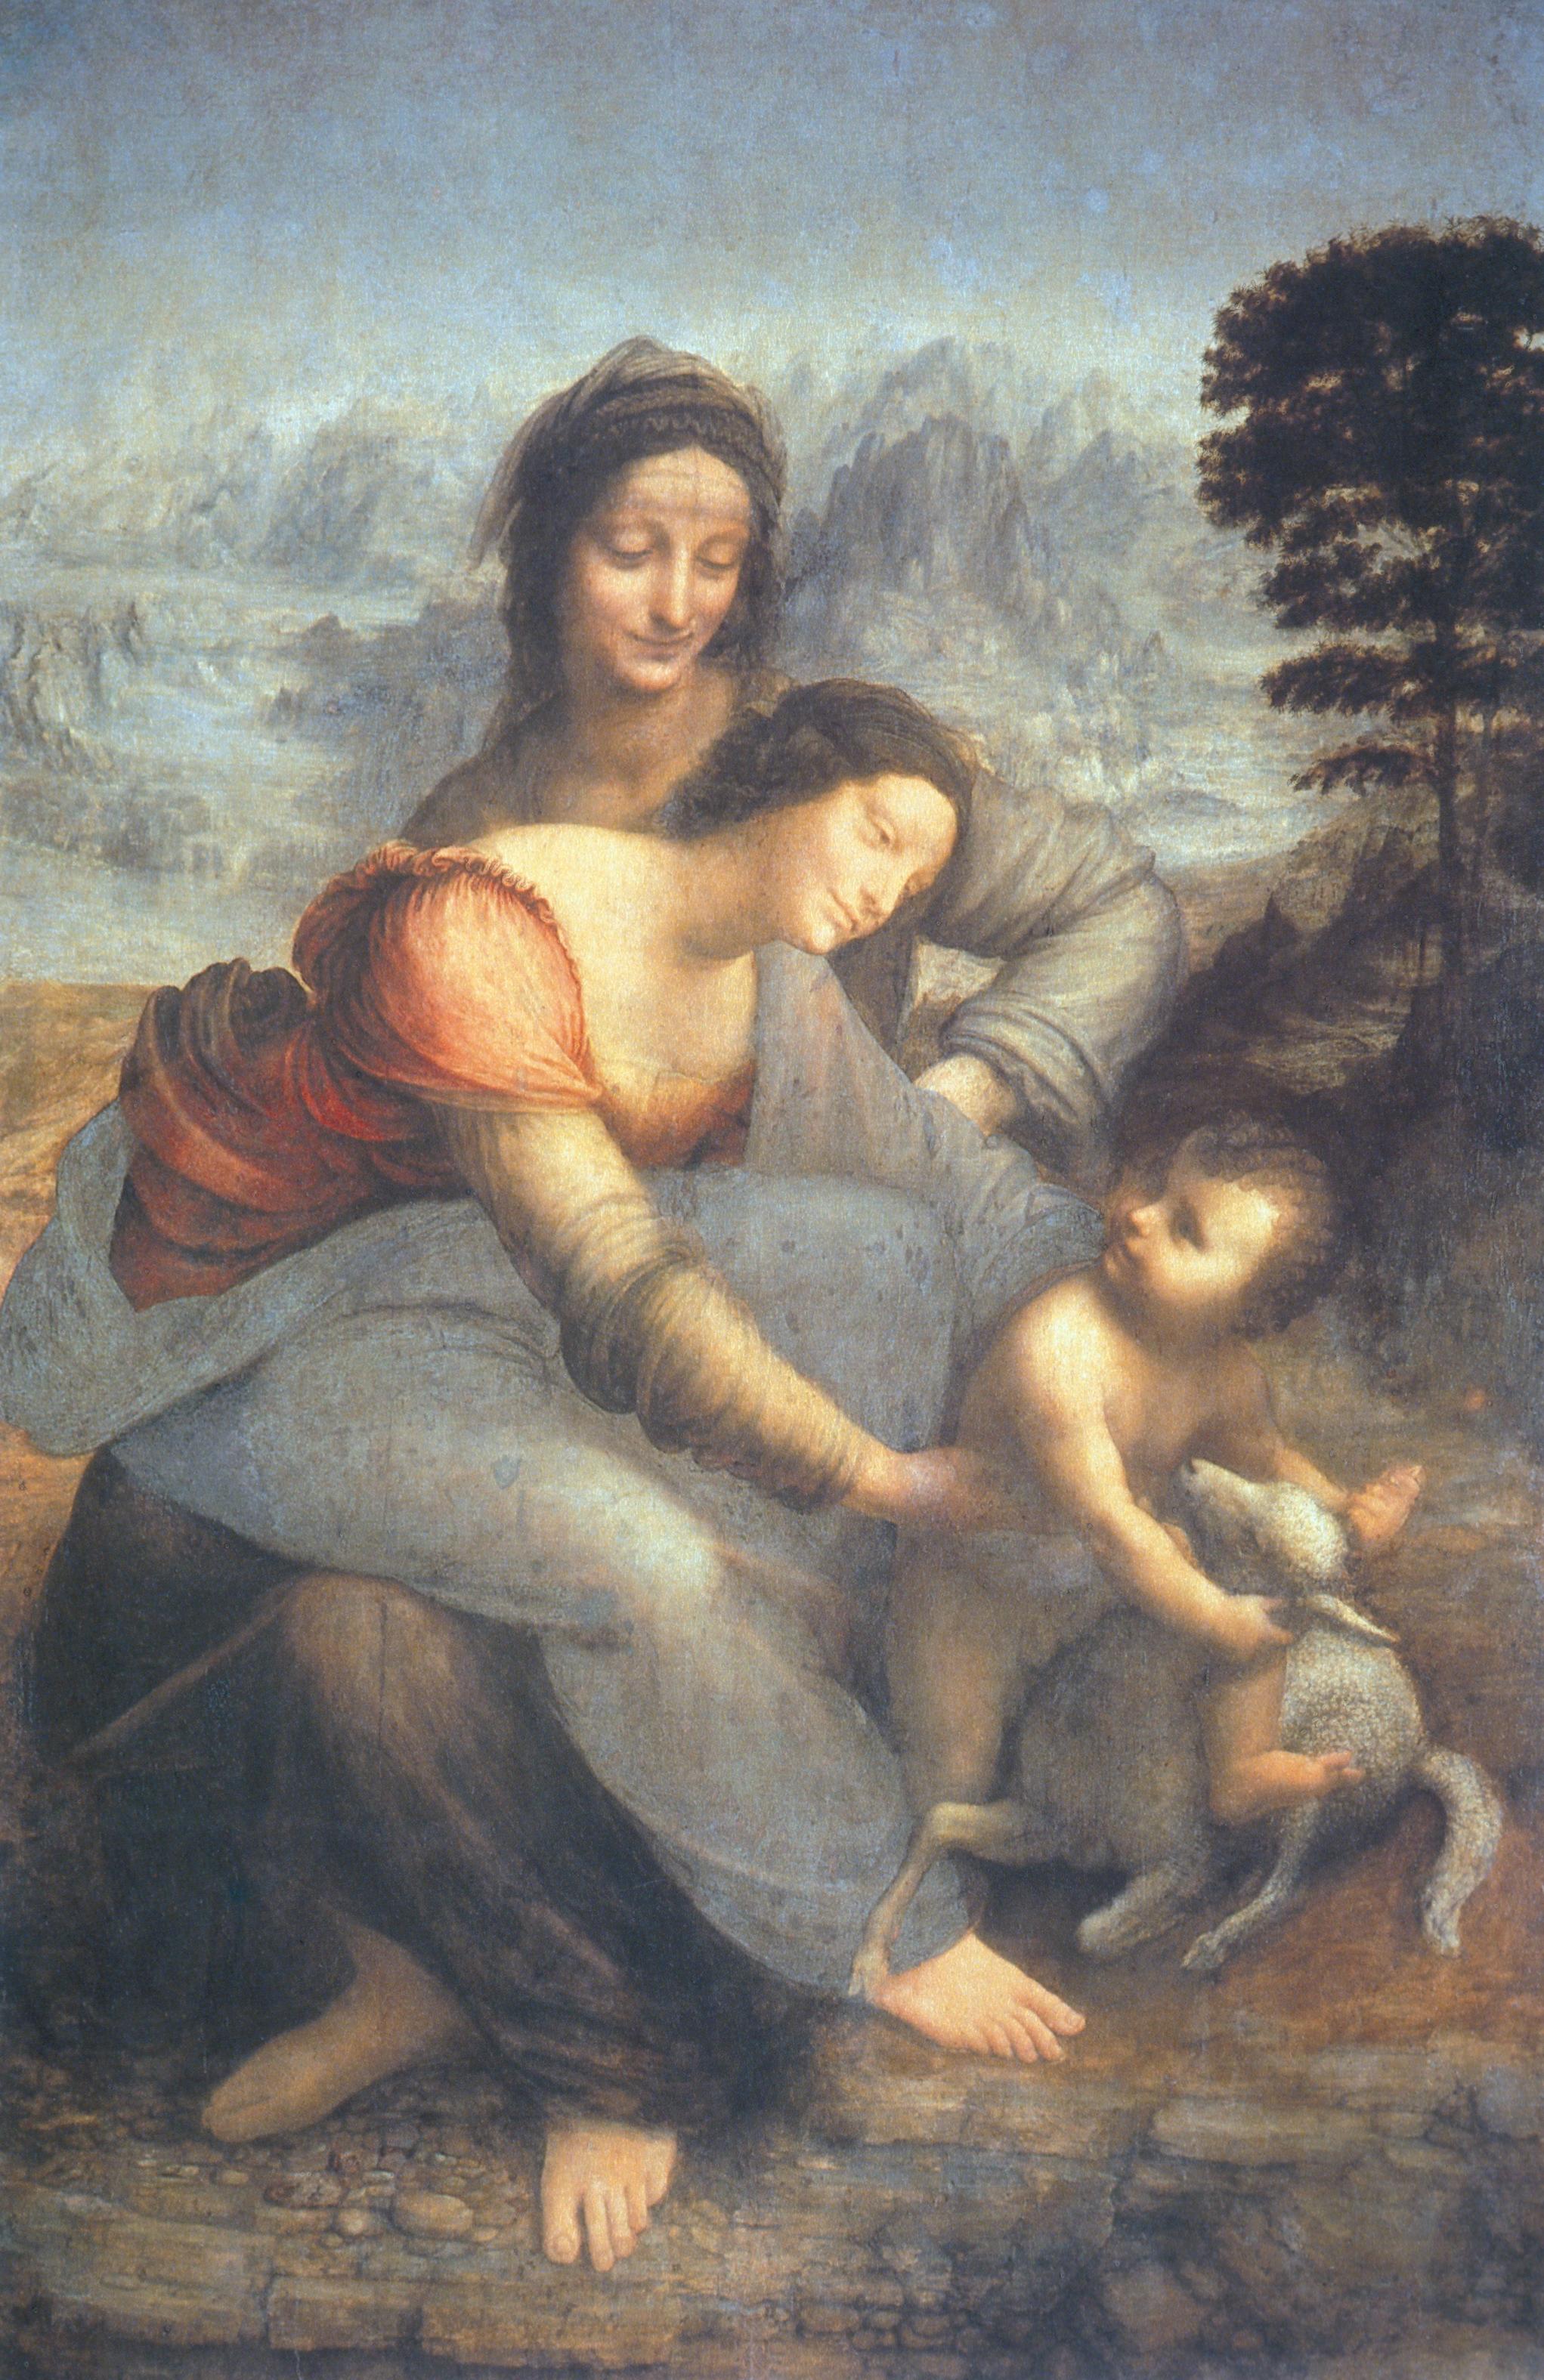 The Virgin and Child with St. Anne by Leonardo da Vinci - ca. 1508 - 168 cm × 112 cm Musée du Louvre